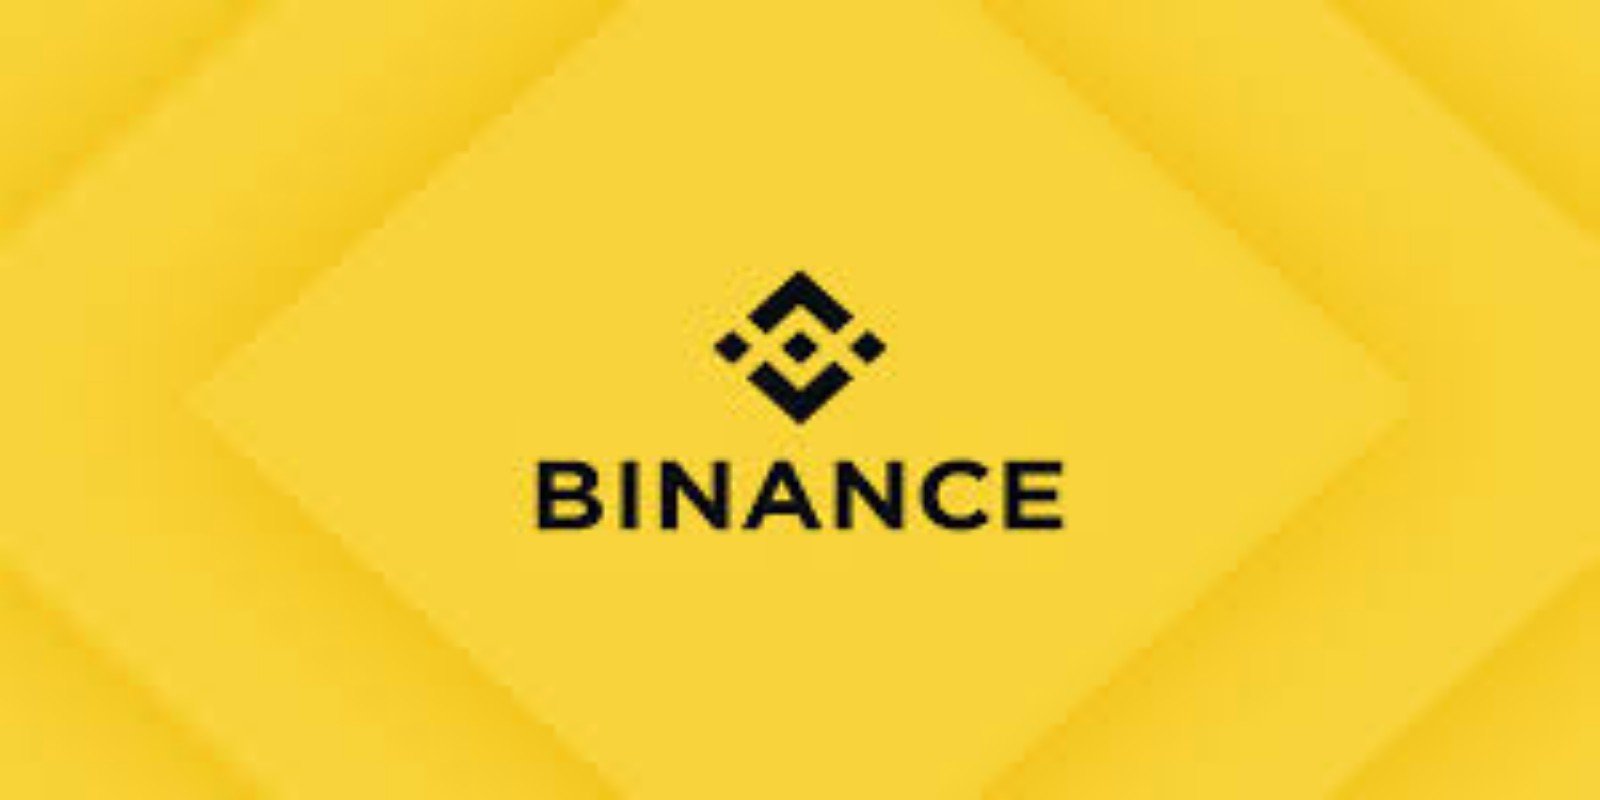 Binance U.S cryptocurrencies platform